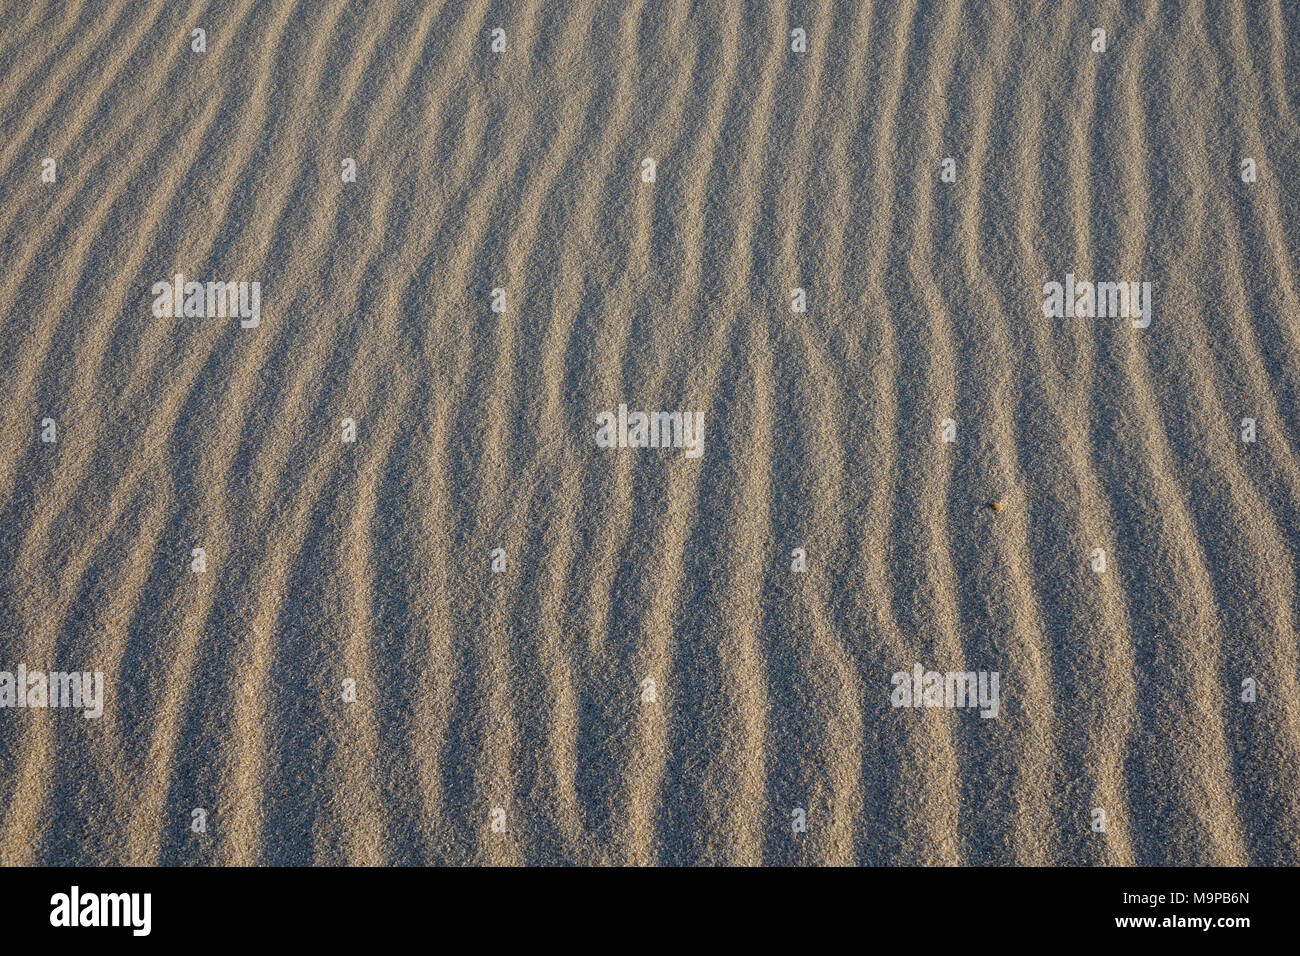 Rides de sable, structure de sable, vagues, Sylt, Nordfriesland, Schleswig-Holstein, Allemagne, image de fond Banque D'Images